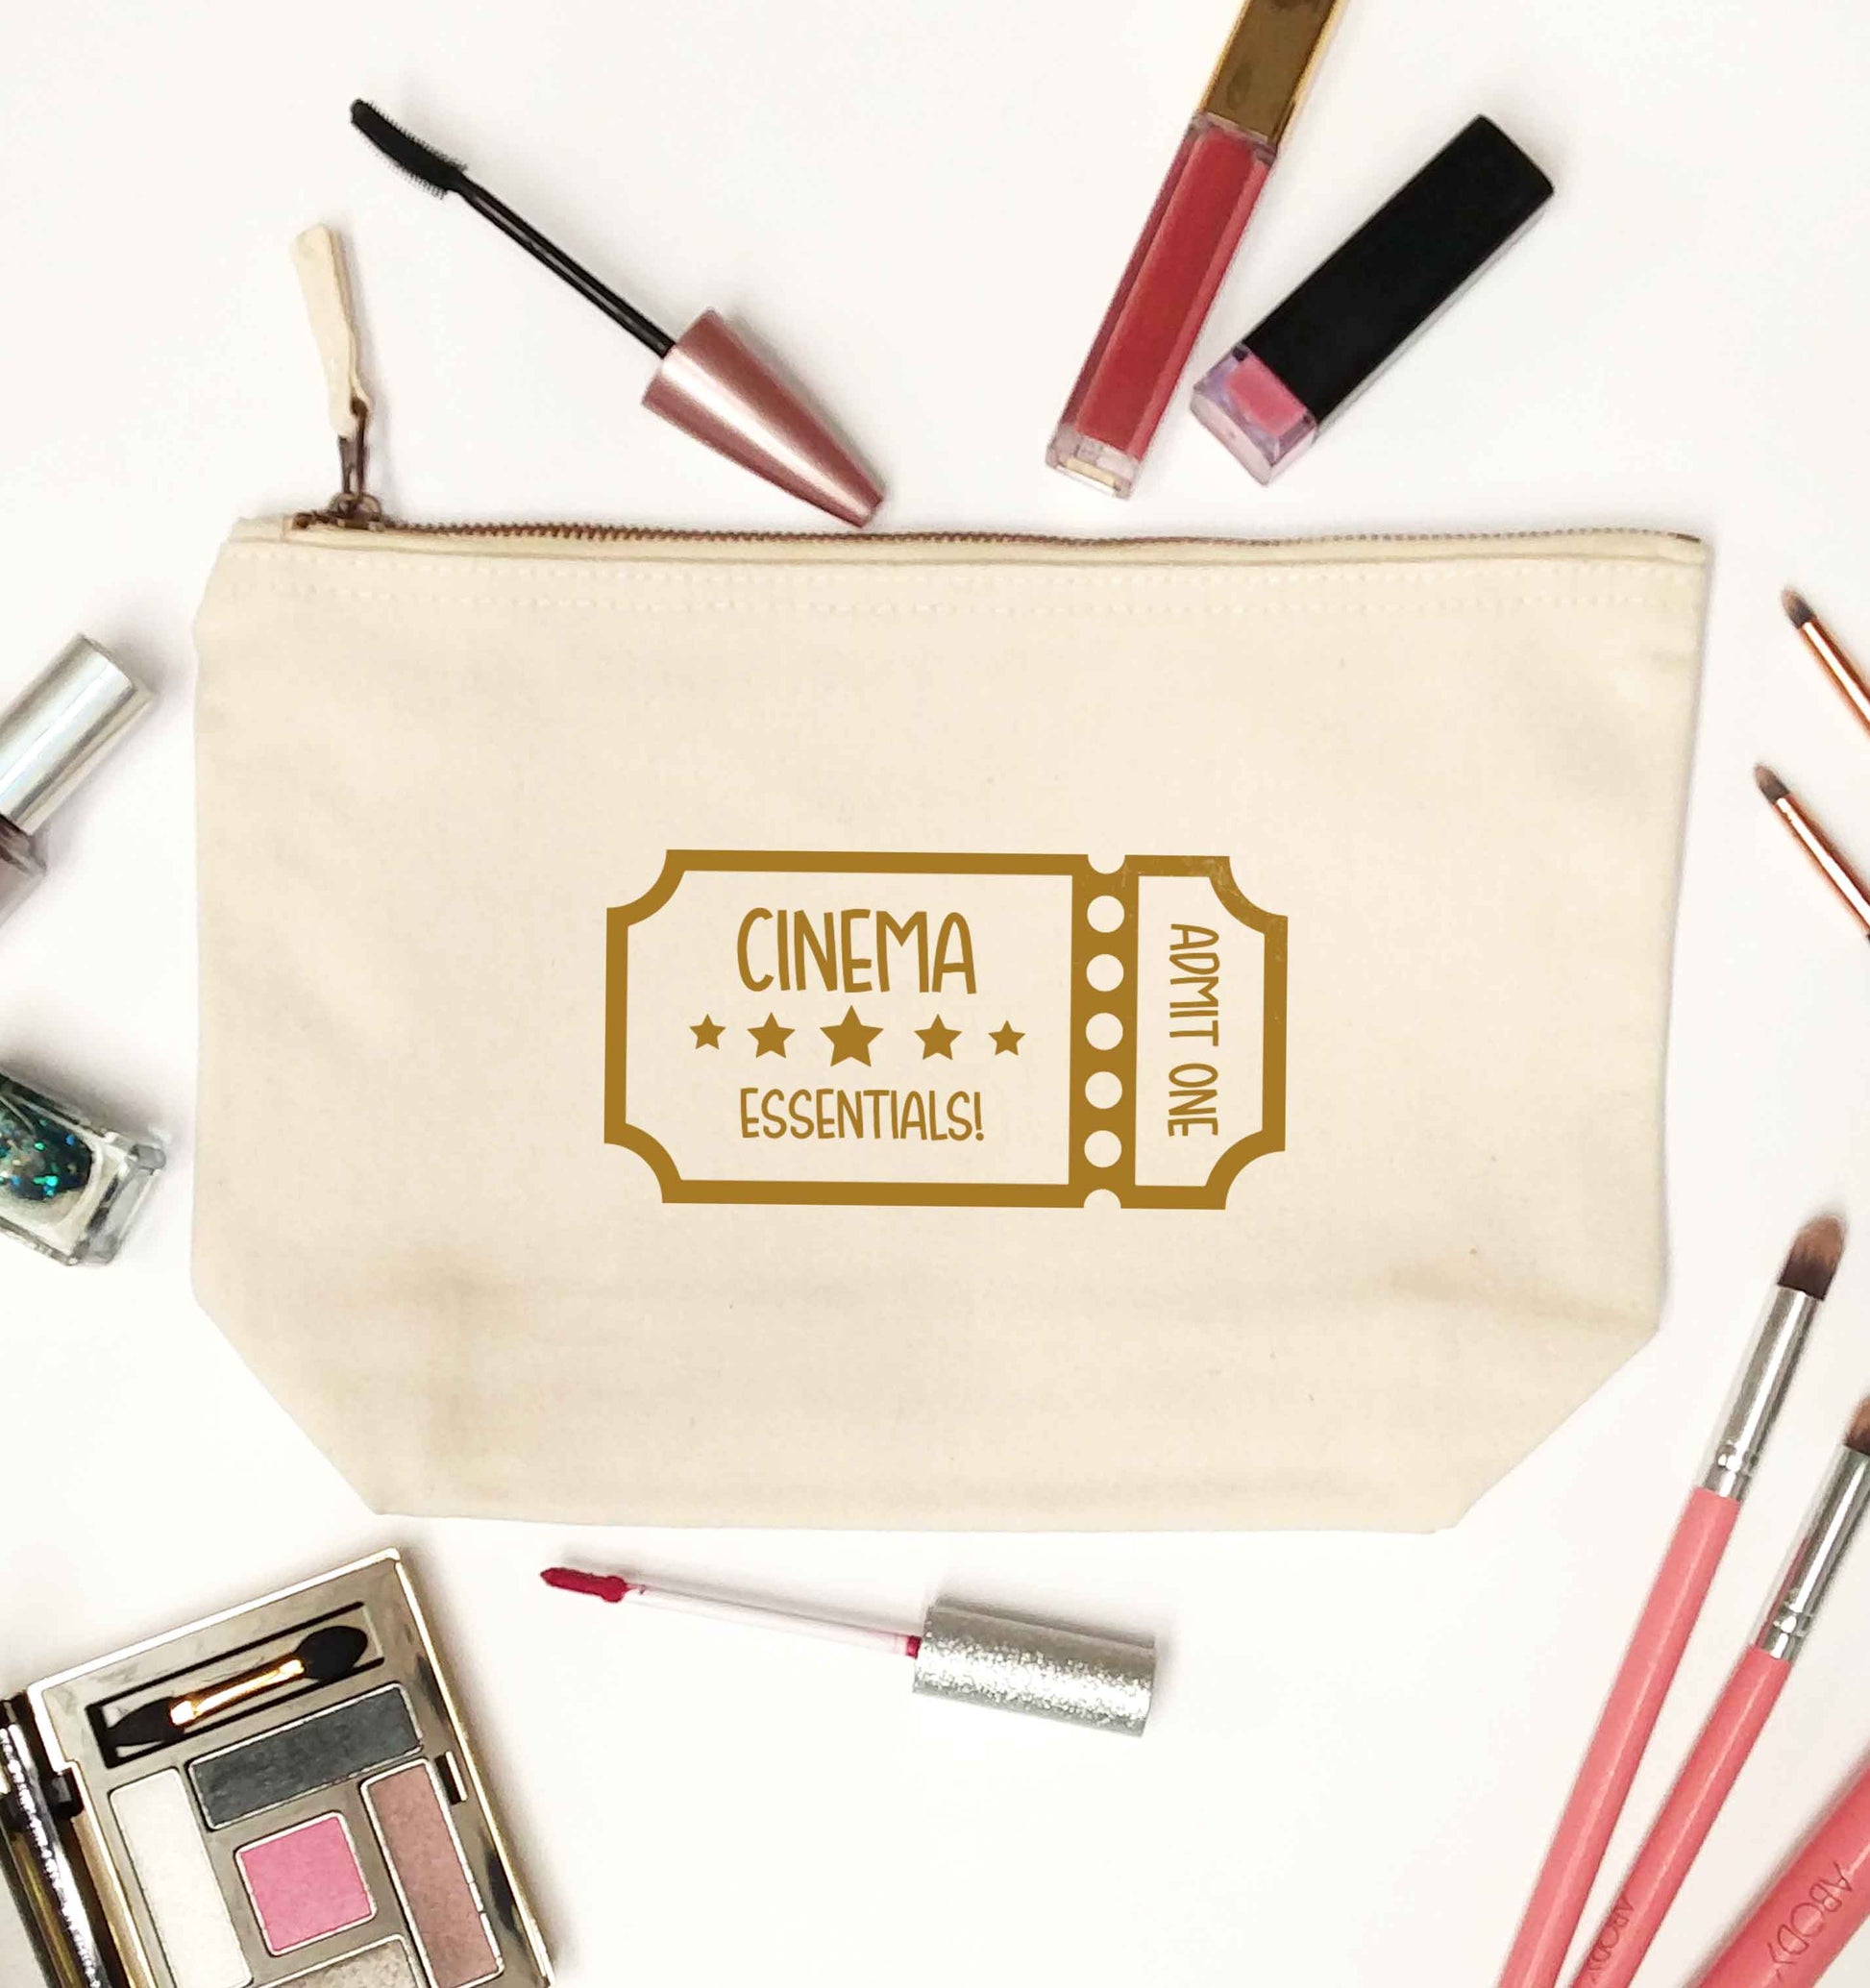 Cinema essentials natural makeup bag